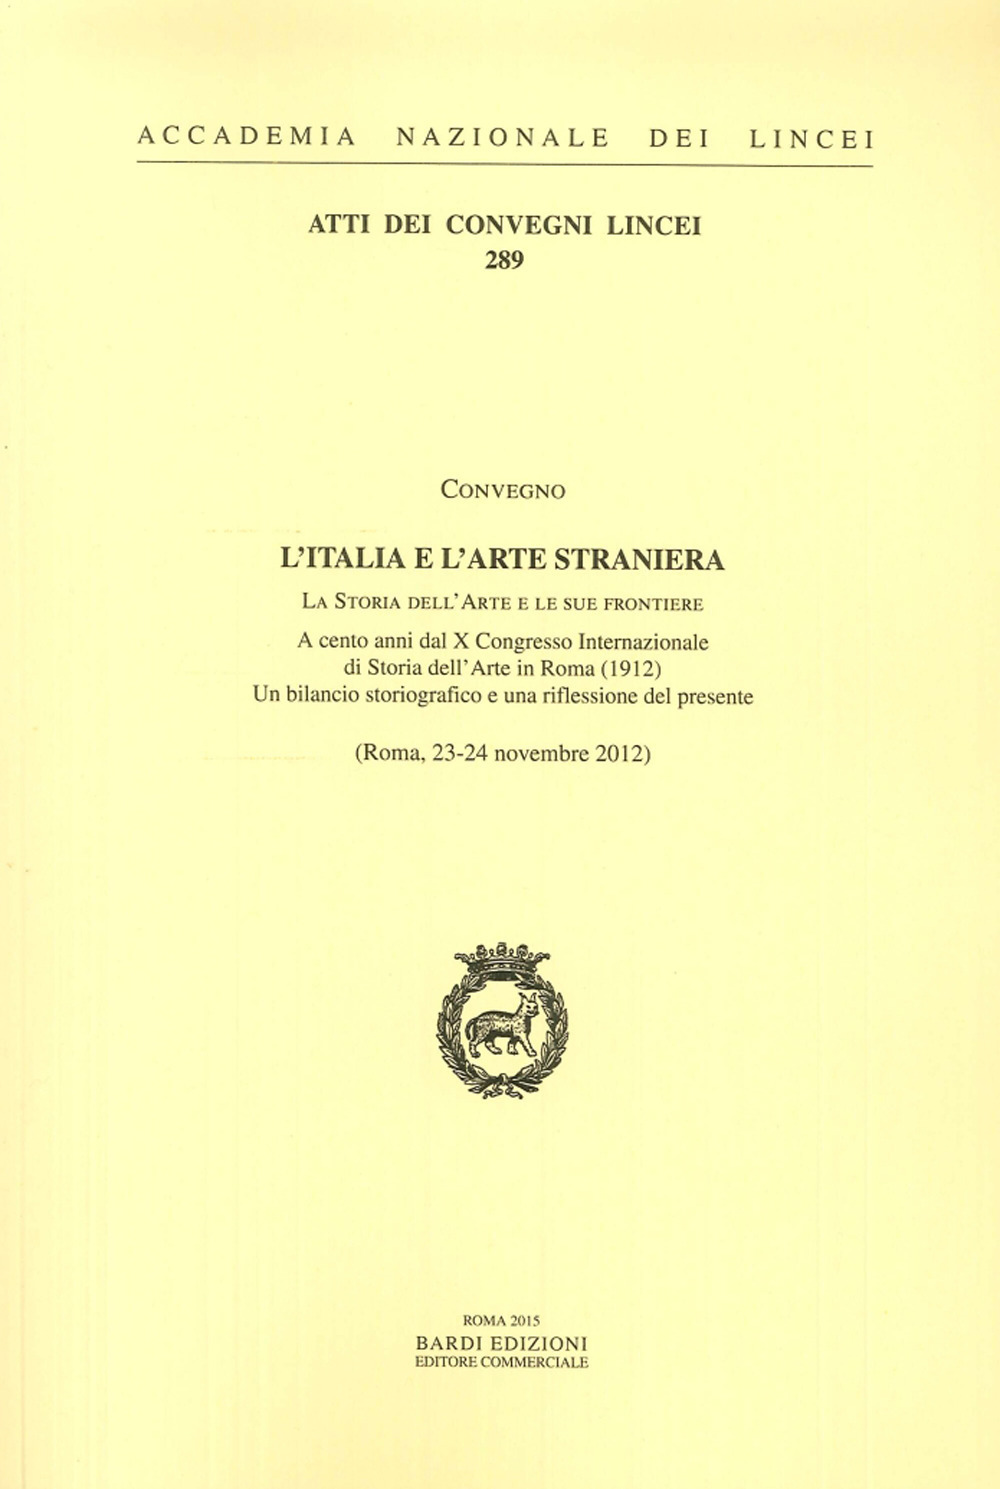 L'Italia e l'arte straniera. La storia dell'arte e le sue frontiere, a cento anni dal X Congresso internazionale di storia dell'arte in Roma (1912)